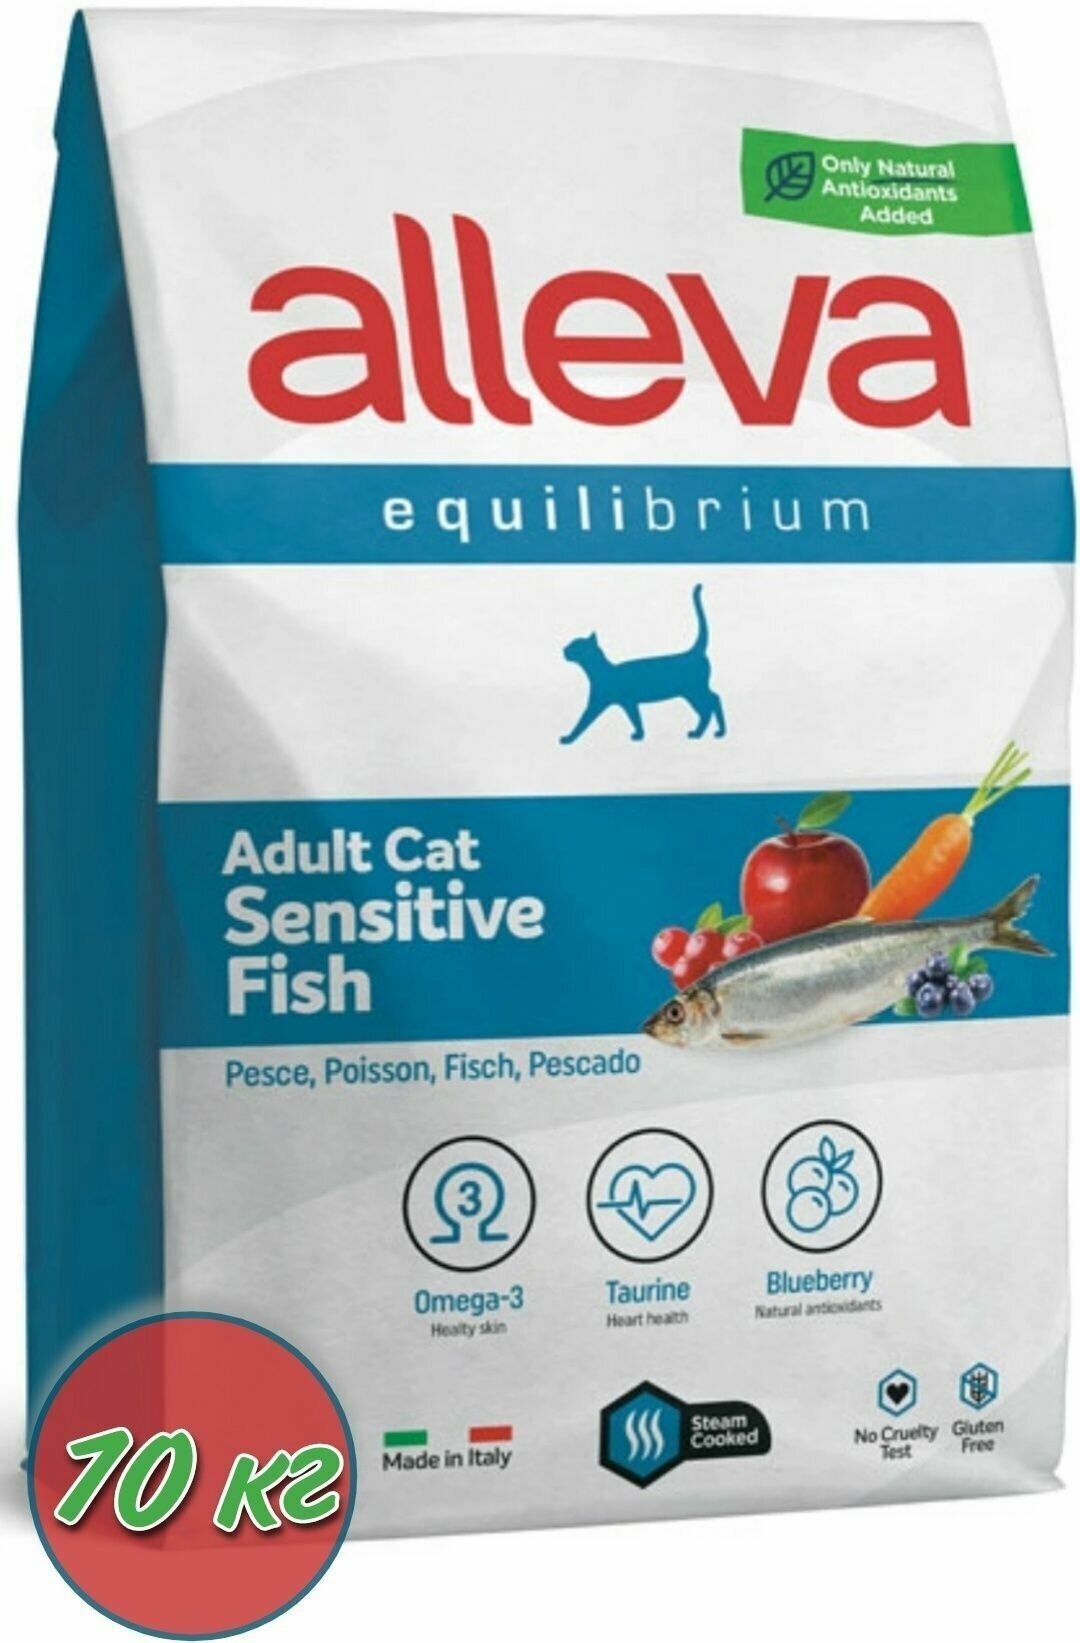 Сухой корм для кошек ALLEVA EQUILIBRIUM SENSITIVE FISH ADULT CAT Аллева корм Эквилибриум Сенситив для взрослых кошек с рыбой 10кг